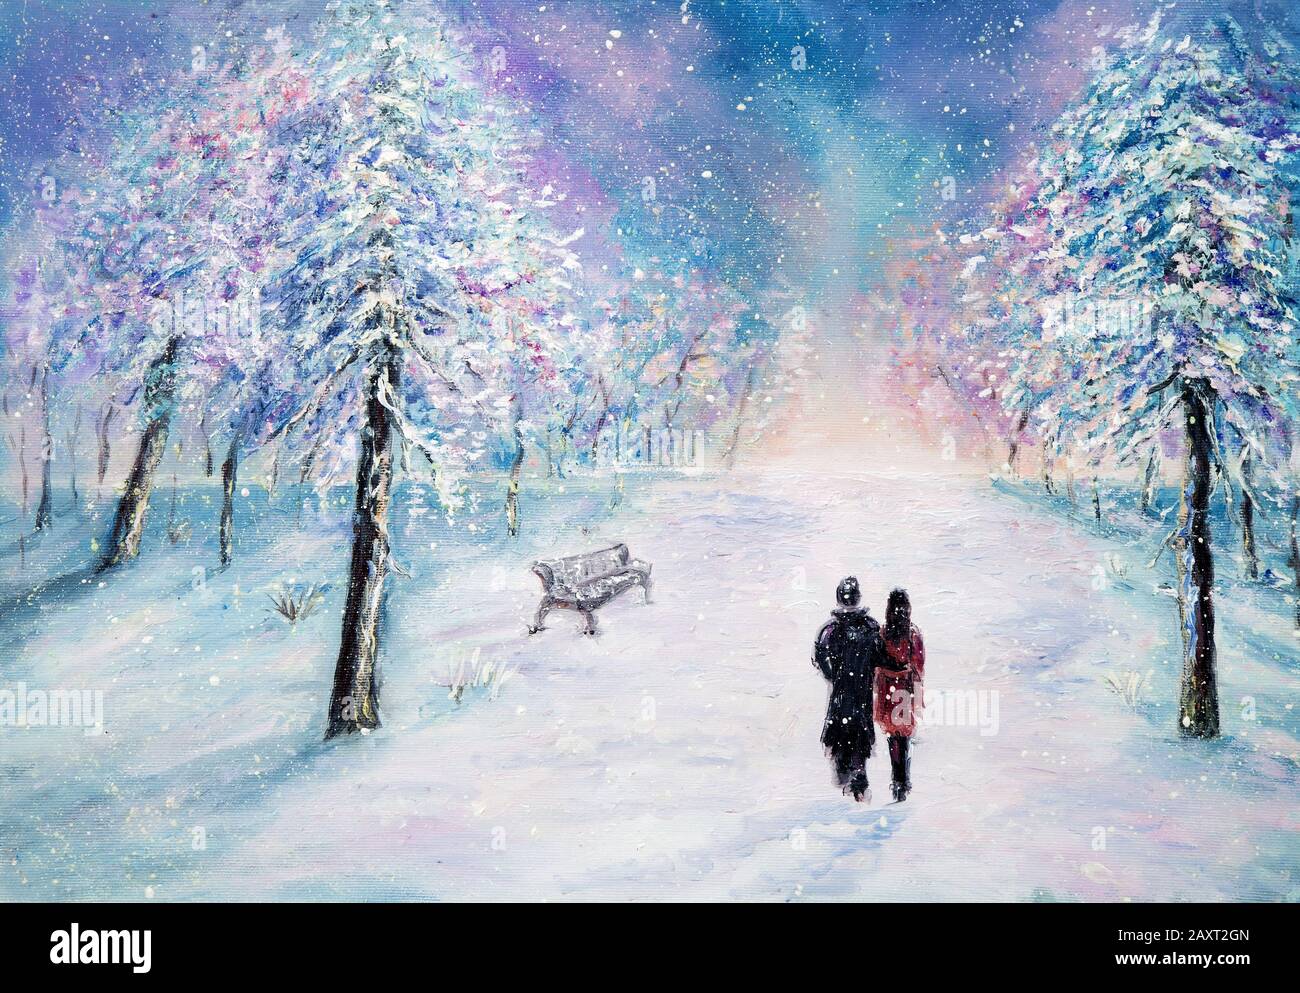 Résultat de recherche d'images pour "peinture abstraite, 2 personnes marchent l'hiver"